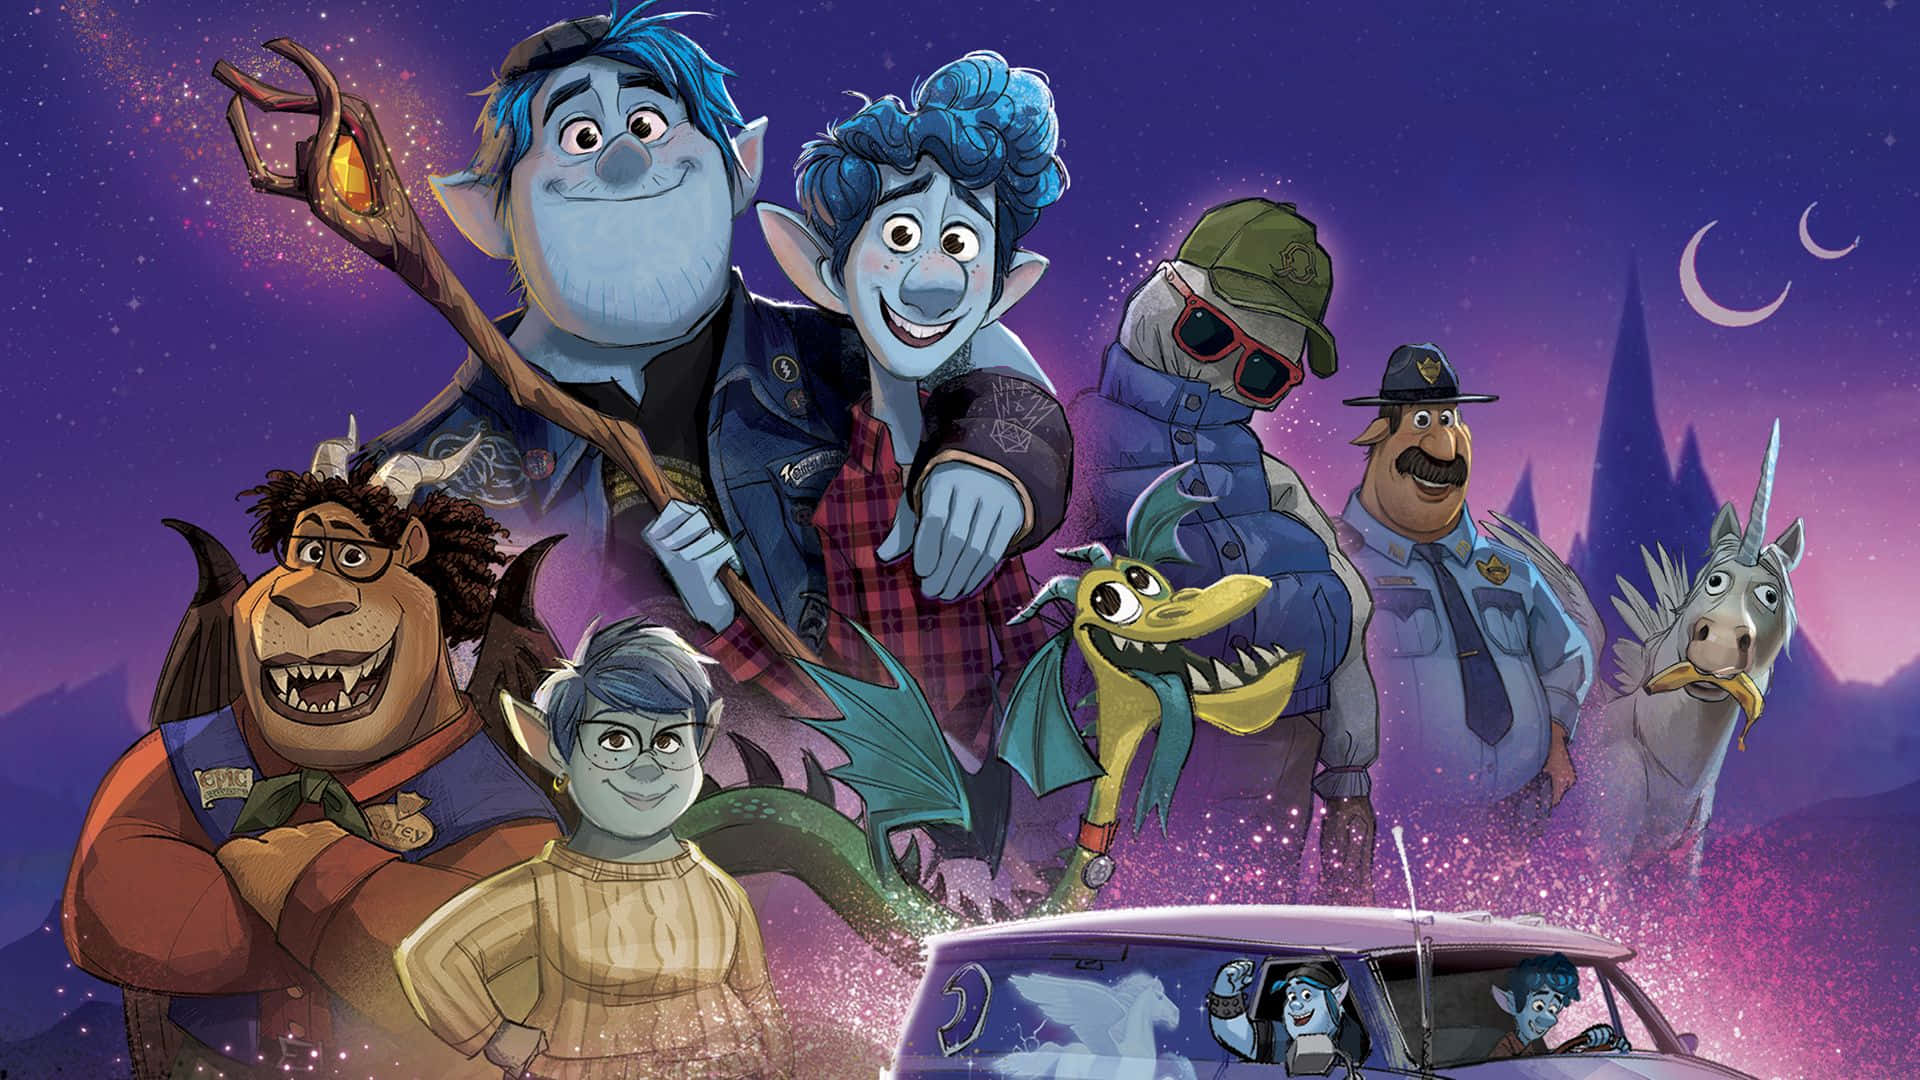 Pixarfeiert Die Magie Des Geschichtenerzählens